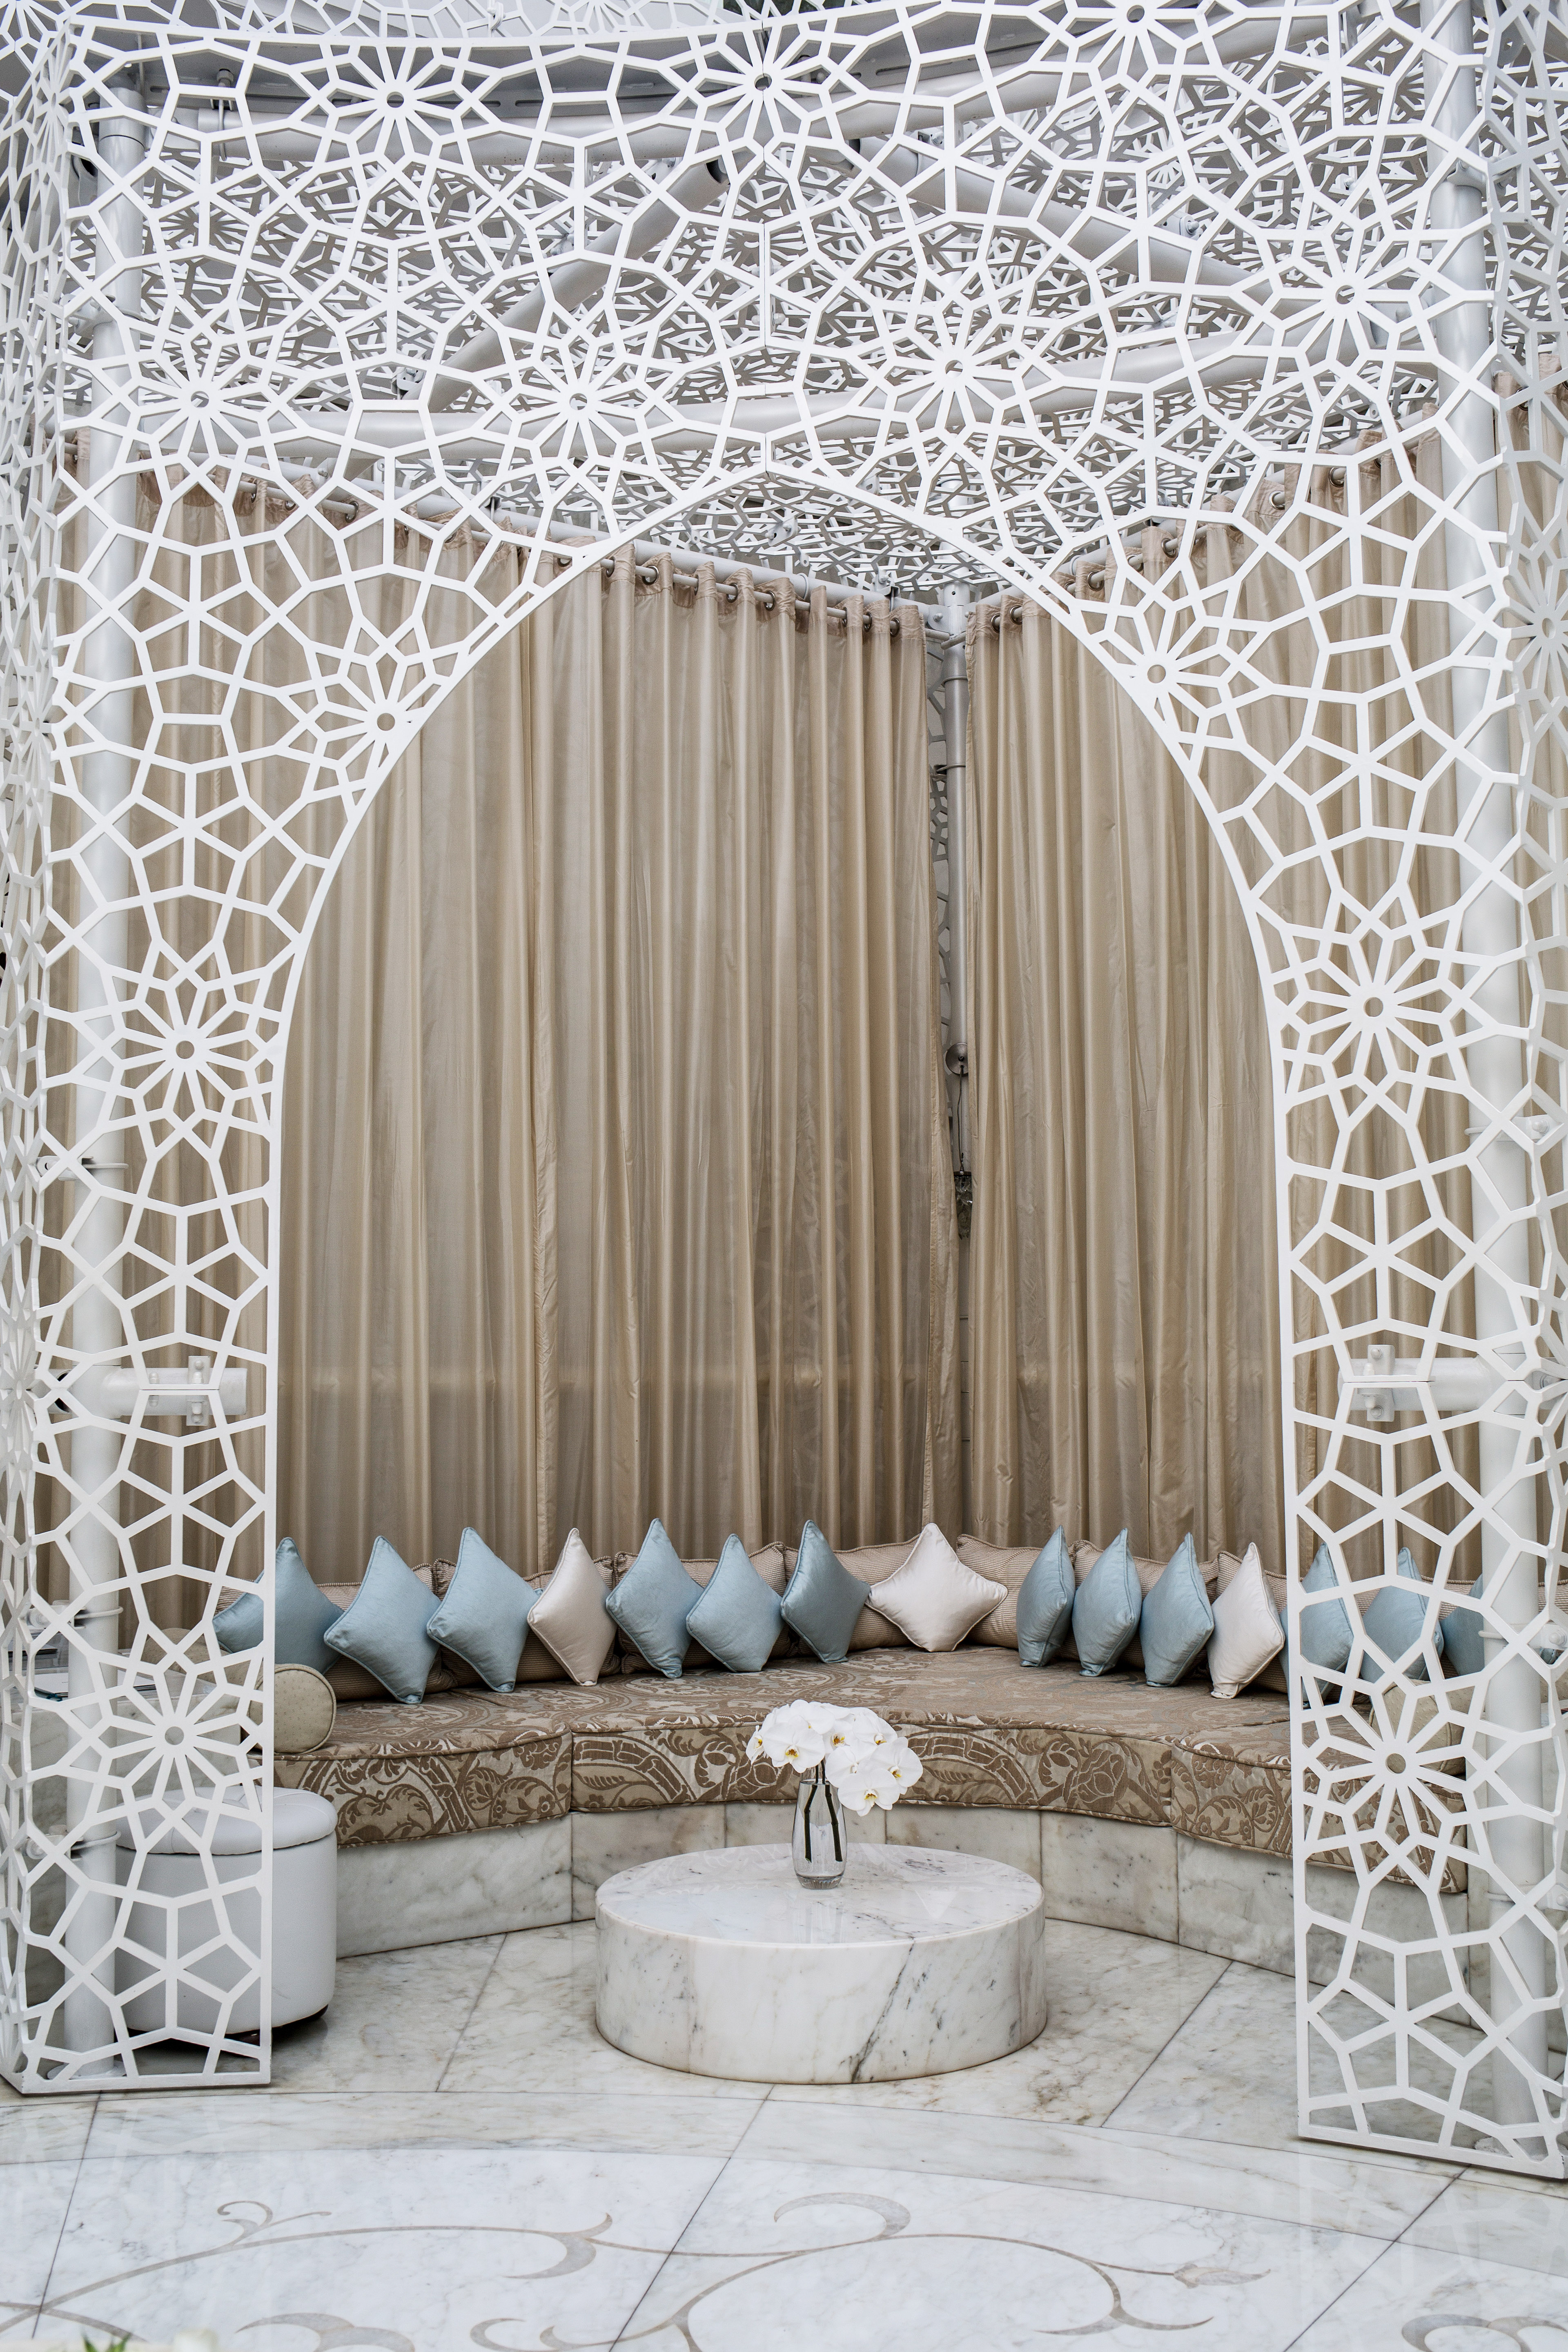 Royal-Mansour-Spa-Marrakech_-9 Royal Mansour Marrakech – A Dreamy Spa Day